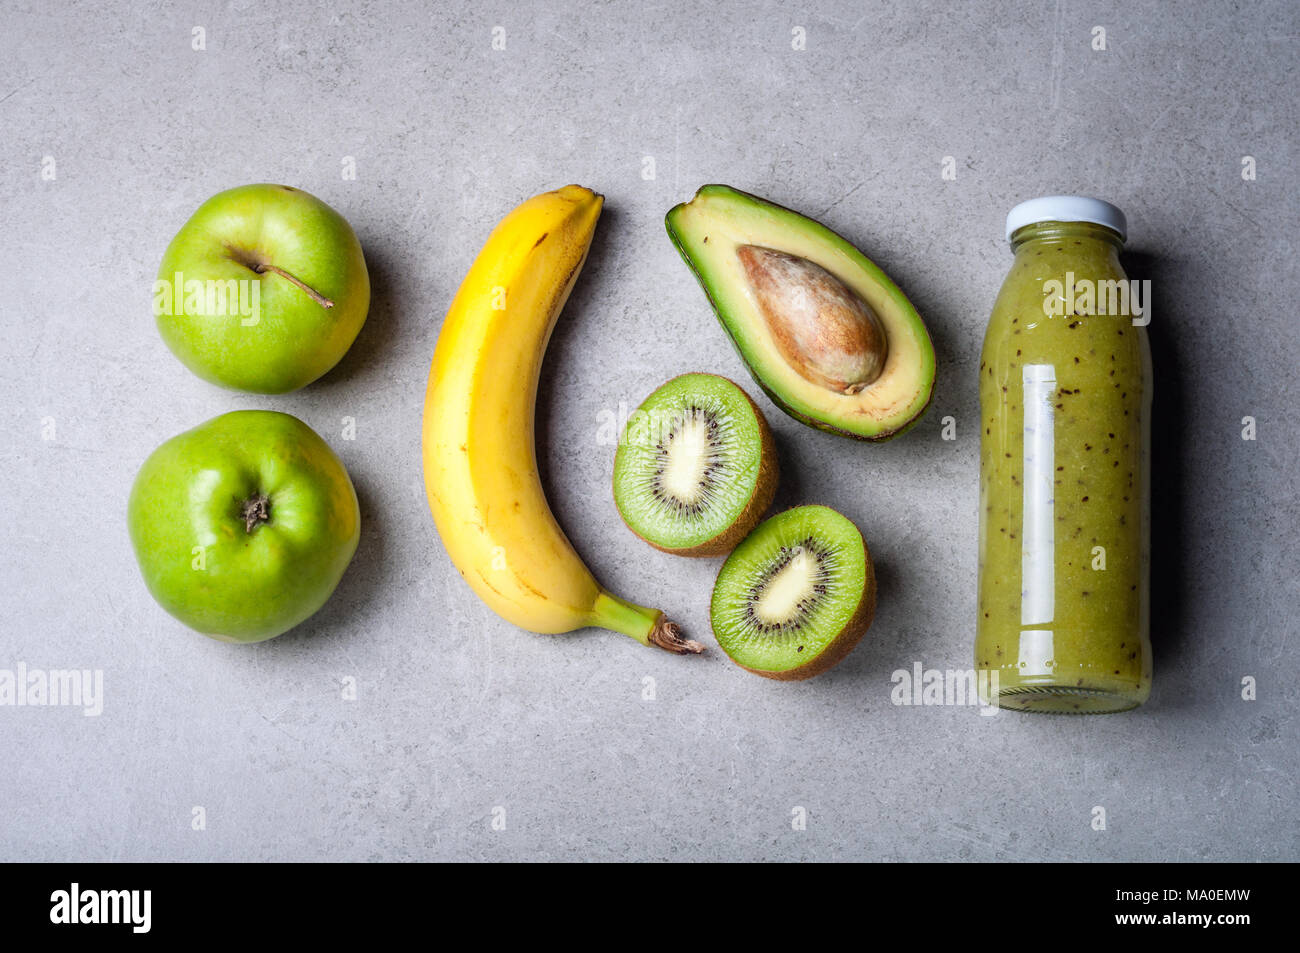 Un sano frullato verde e gli ingredienti su sfondo grigio. Frullato di kiwi con frutti. Superfoods, dieta disintossicante, salute cibo vegetariano concept Foto Stock